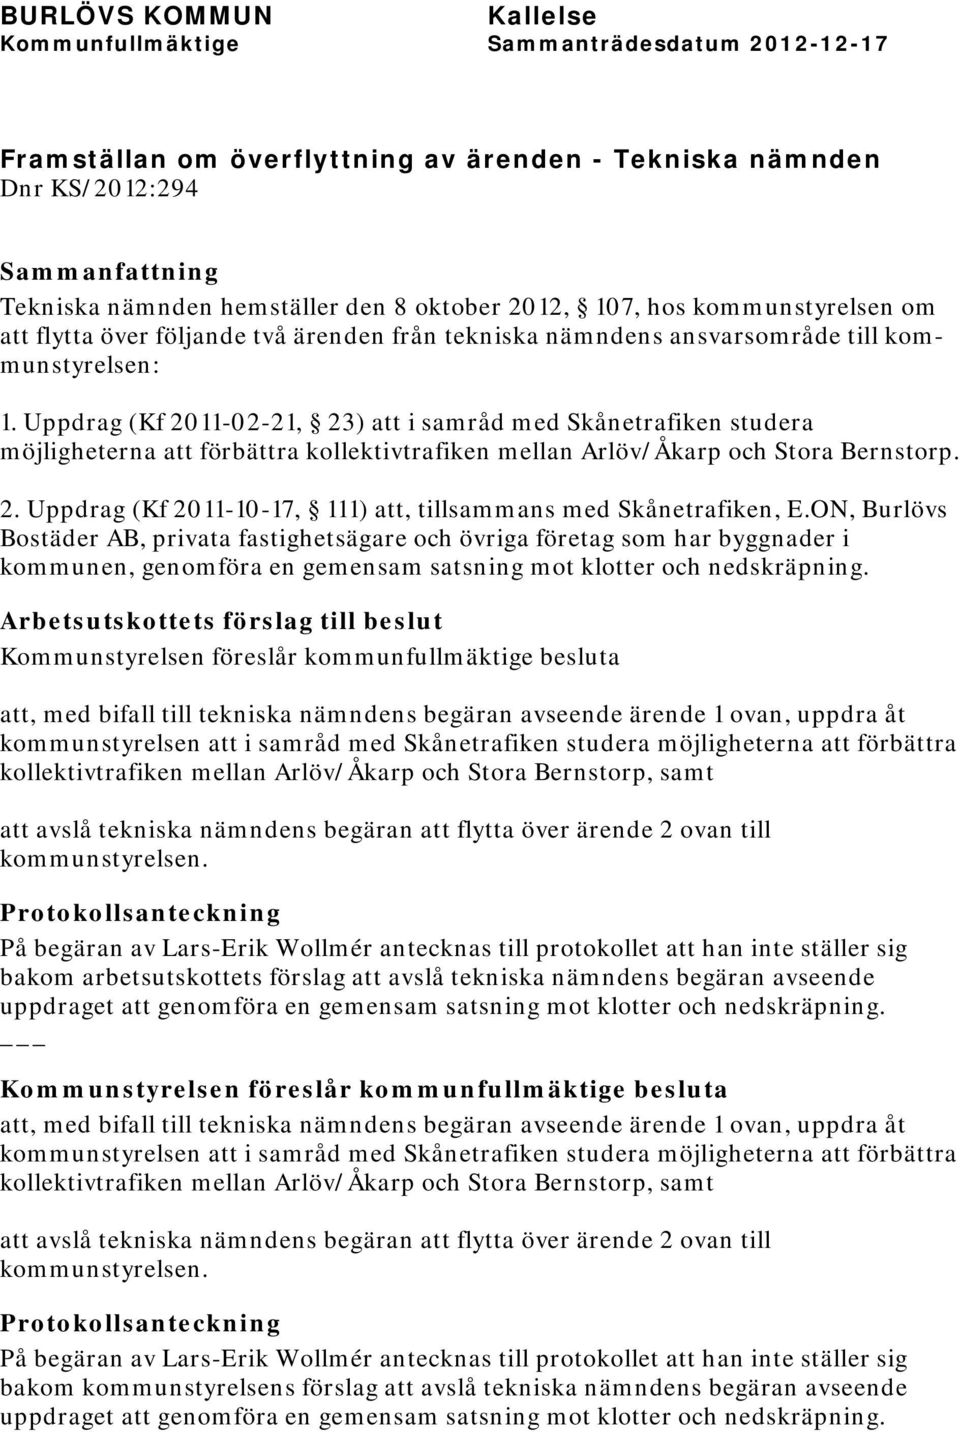 Uppdrag (Kf 2011-02-21, 23) att i samråd med Skånetrafiken studera möjligheterna att förbättra kollektivtrafiken mellan Arlöv/Åkarp och Stora Bernstorp. 2. Uppdrag (Kf 2011-10-17, 111) att, tillsammans med Skånetrafiken, E.